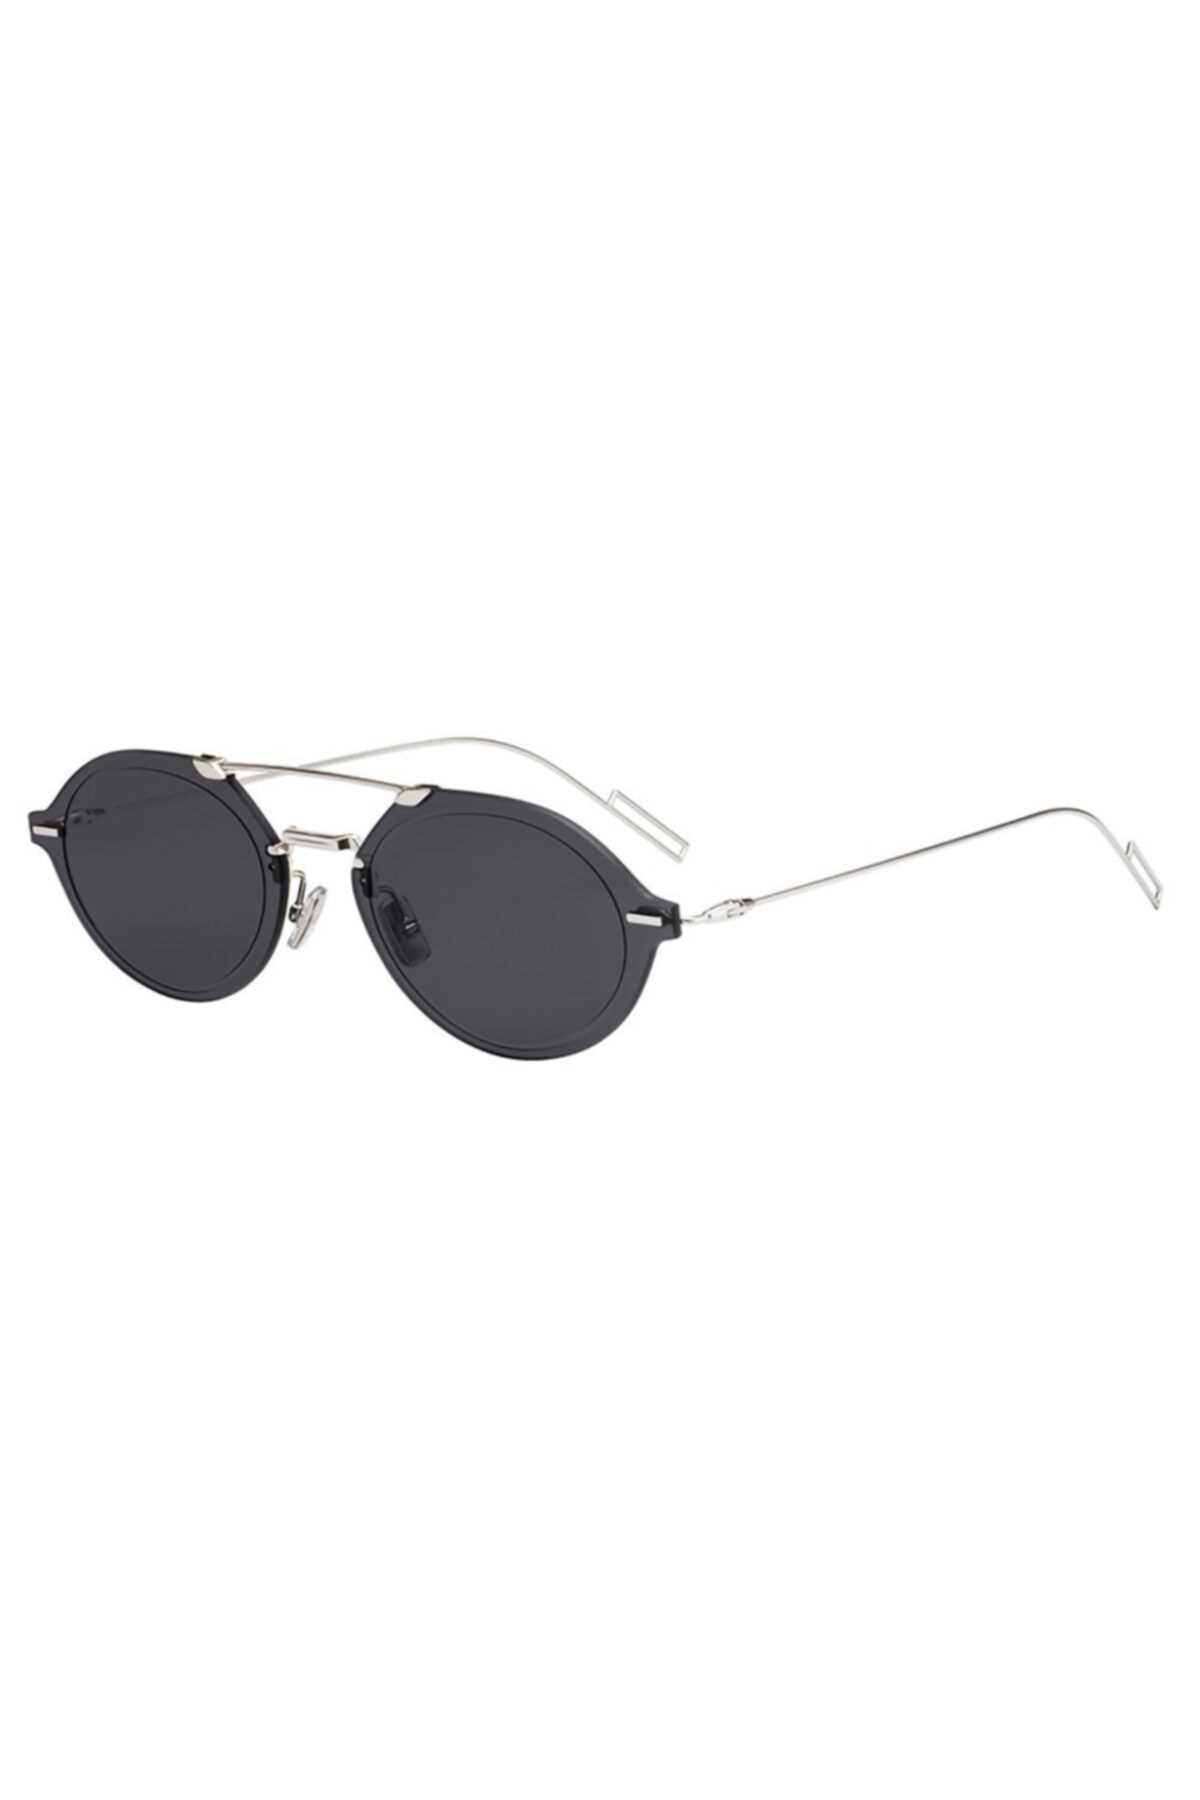 سفارش اینترنتی عینک آفتابی فانتزی برند Christian Dior رنگ نقره کد ty67943921